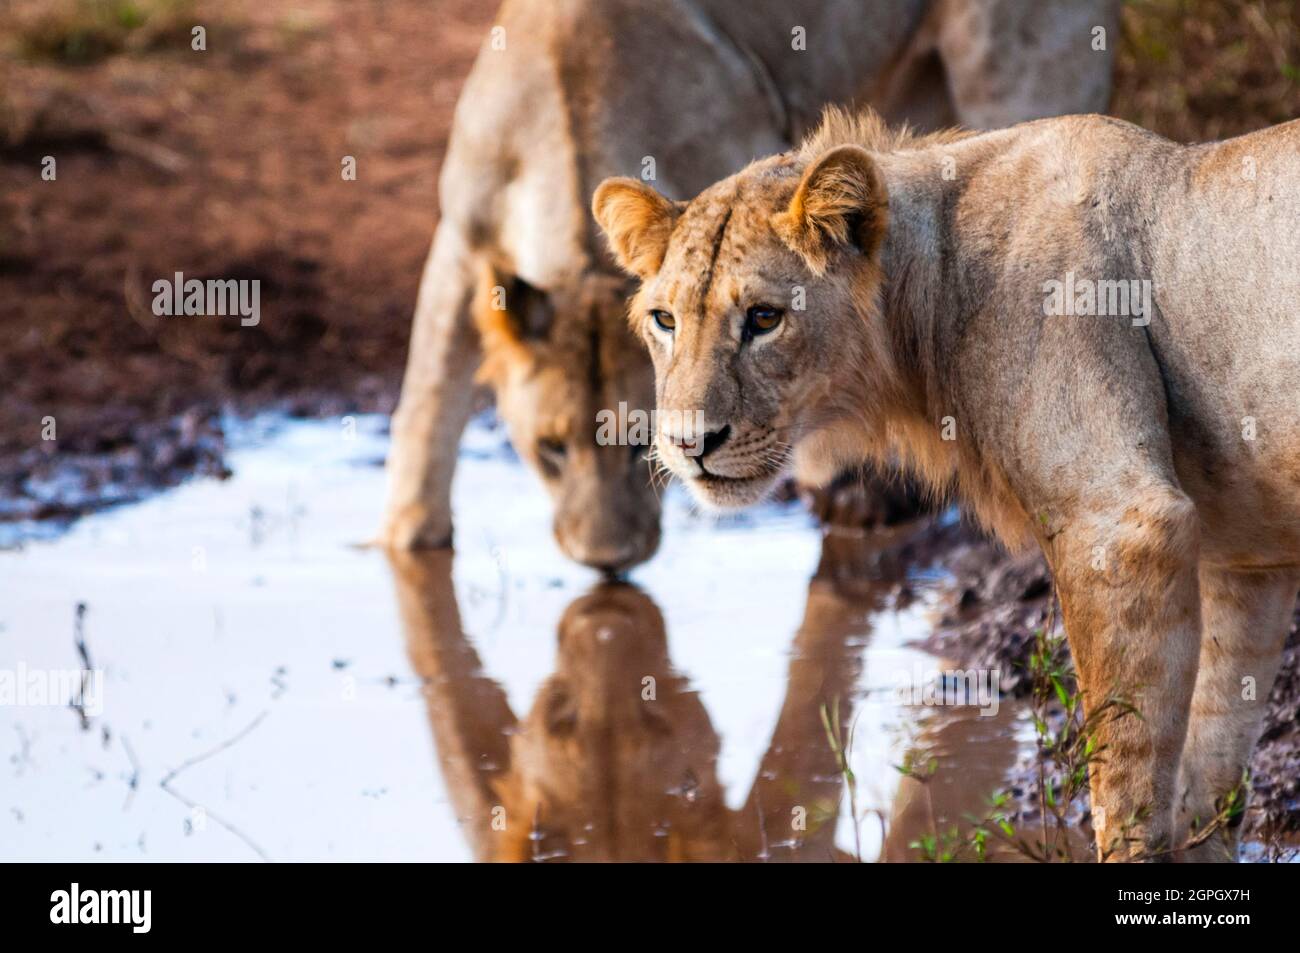 Kenya, parc national de Tsavo East, deux jeunes lions mâles (Panthera leo) buvant dans une flaque Banque D'Images